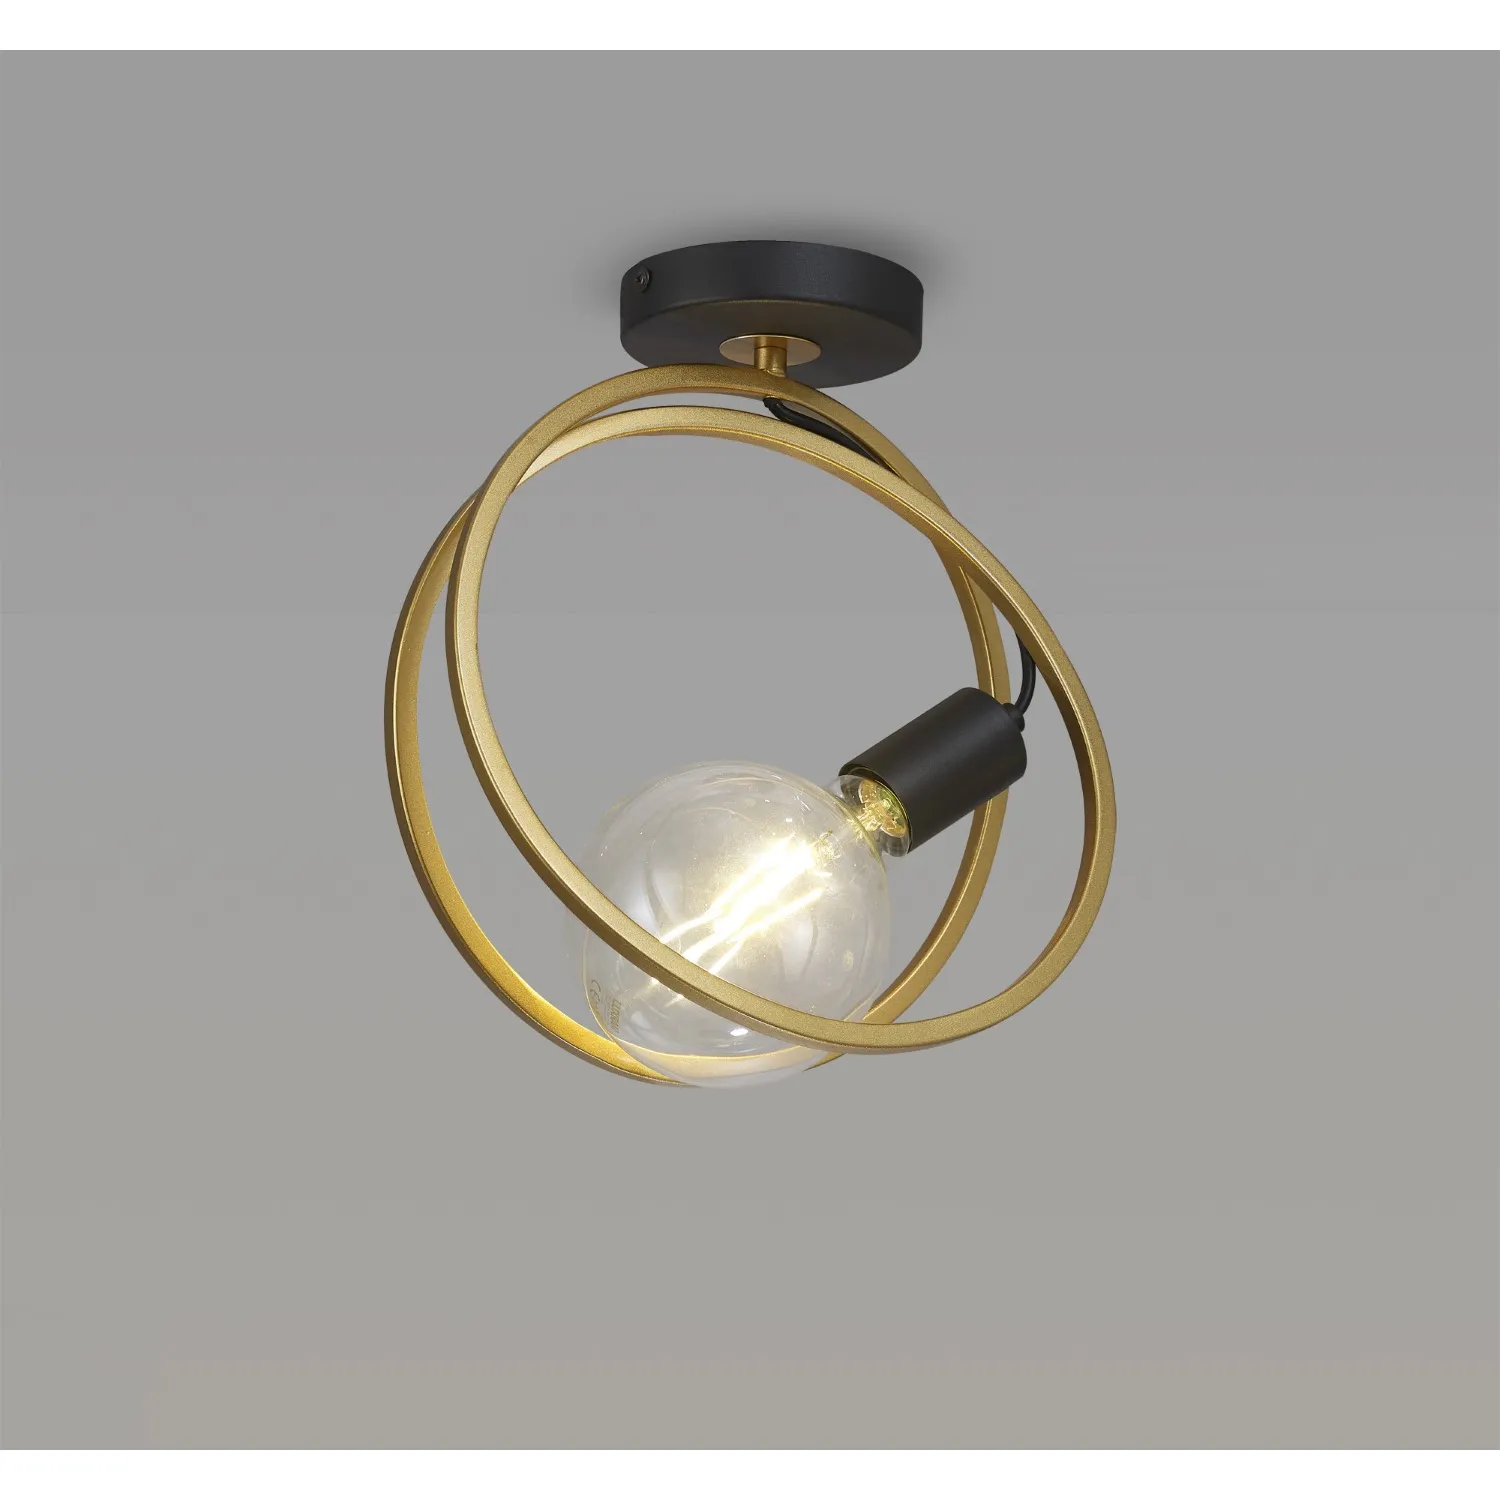 Battersea Double Ring Ceiling Flush, 1 Light E27, Matt Black Painted Gold, G95 120 Lamp Recommended